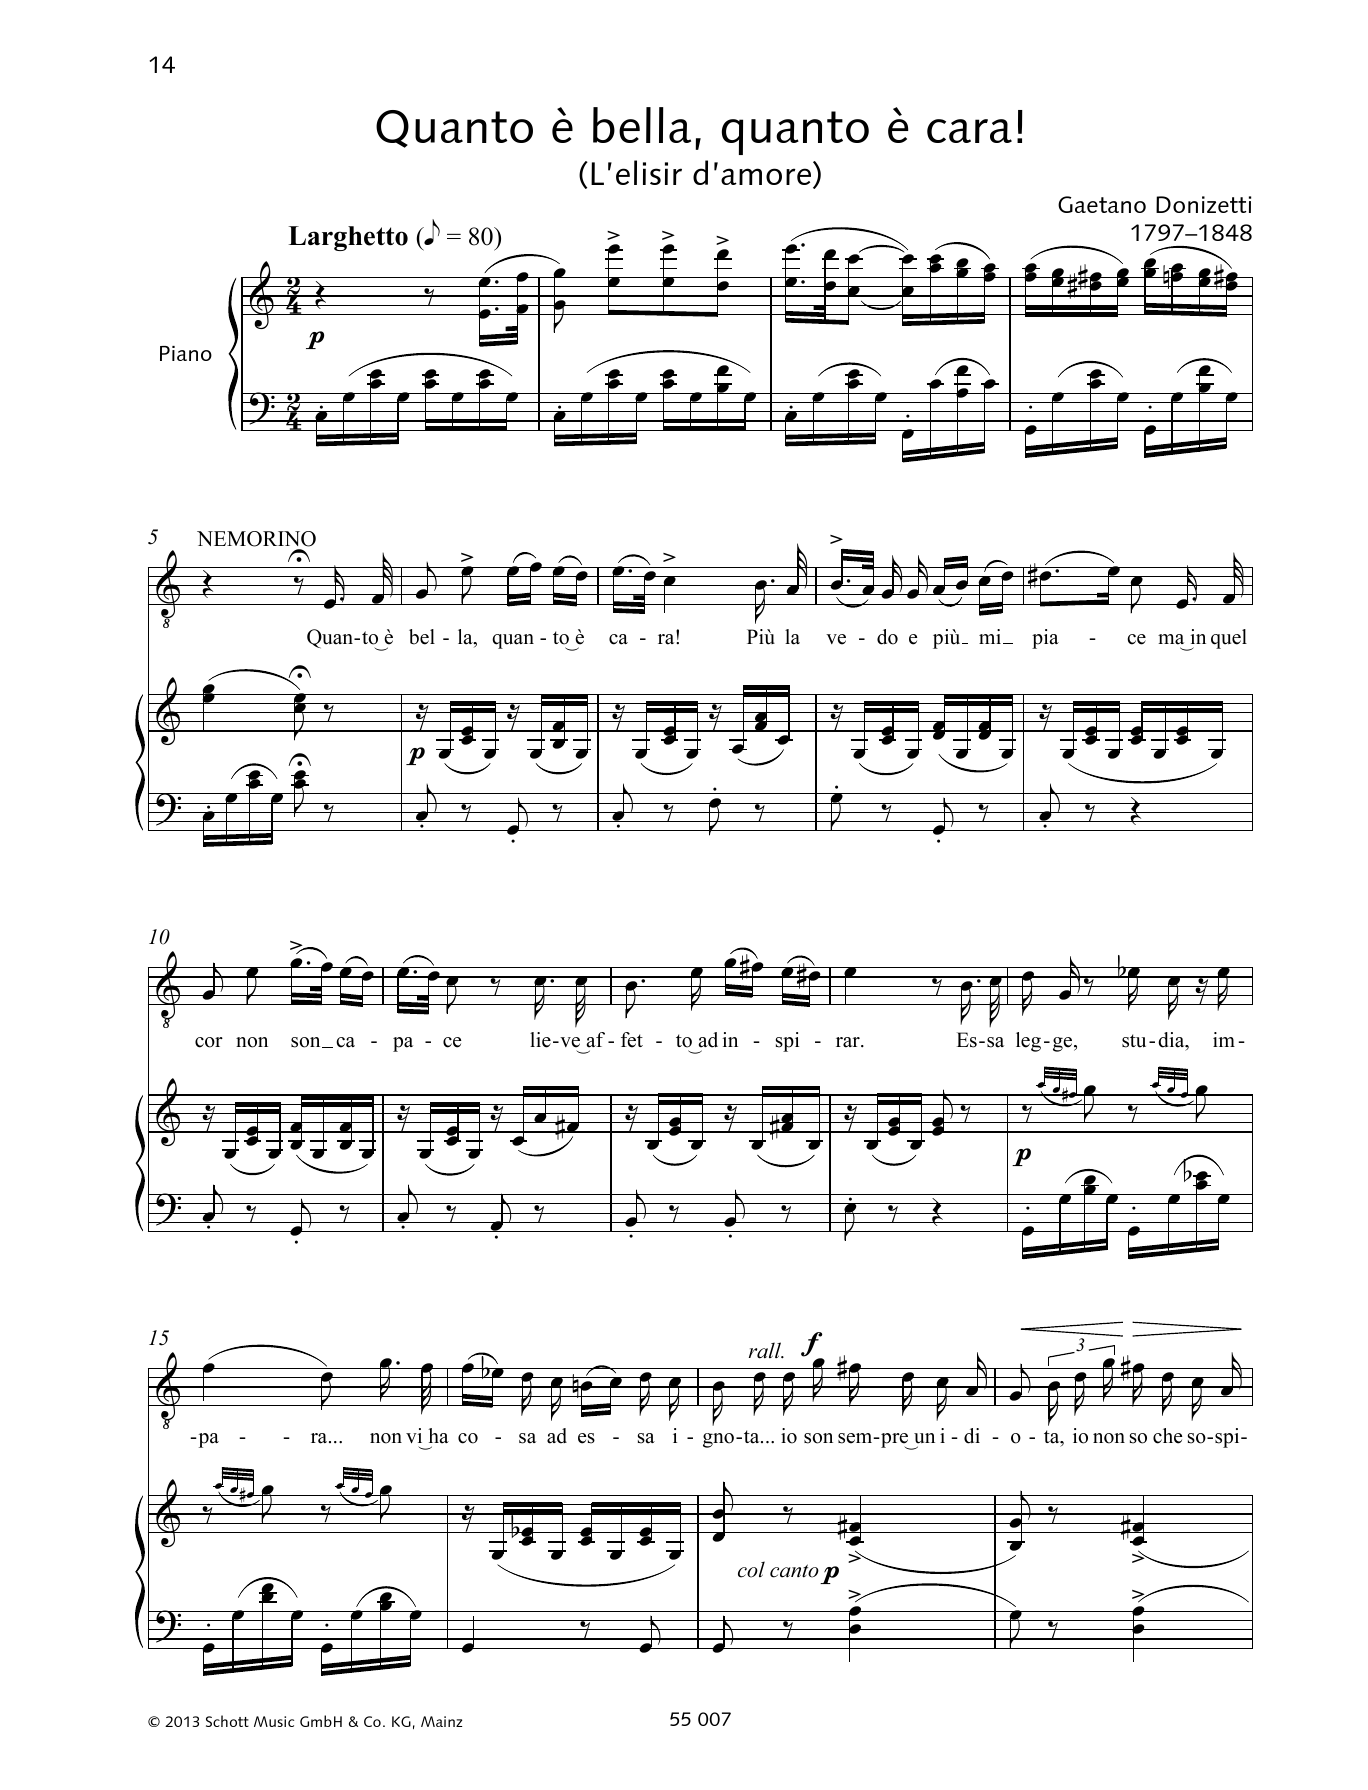 Download Francesca Licciarda Quanto è bella, quanto è cara! Sheet Music and learn how to play Piano & Vocal PDF digital score in minutes